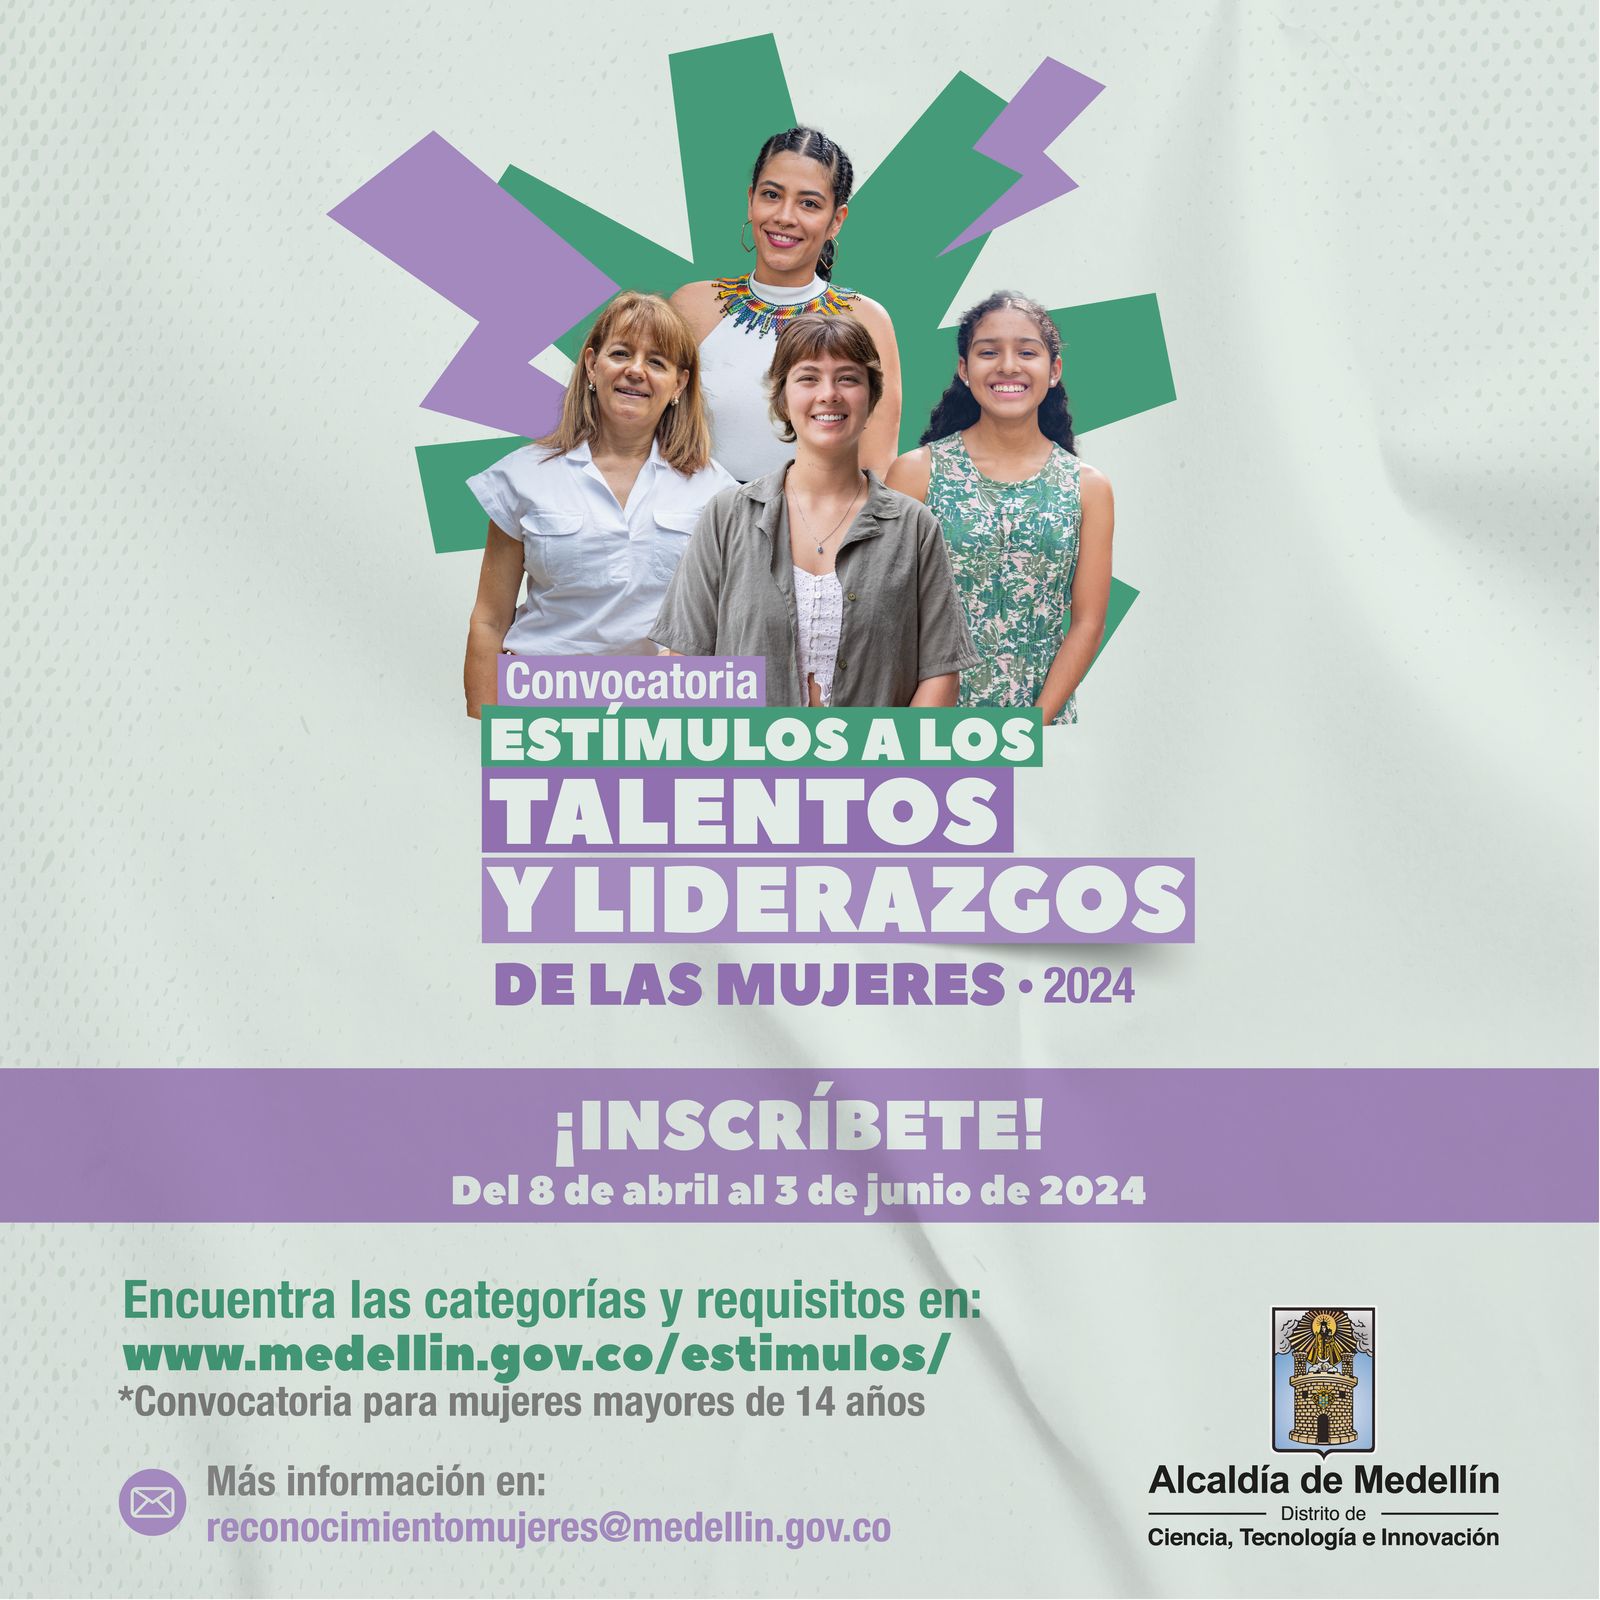 Medellín reconoce los talentos y liderazgos de las mujeres